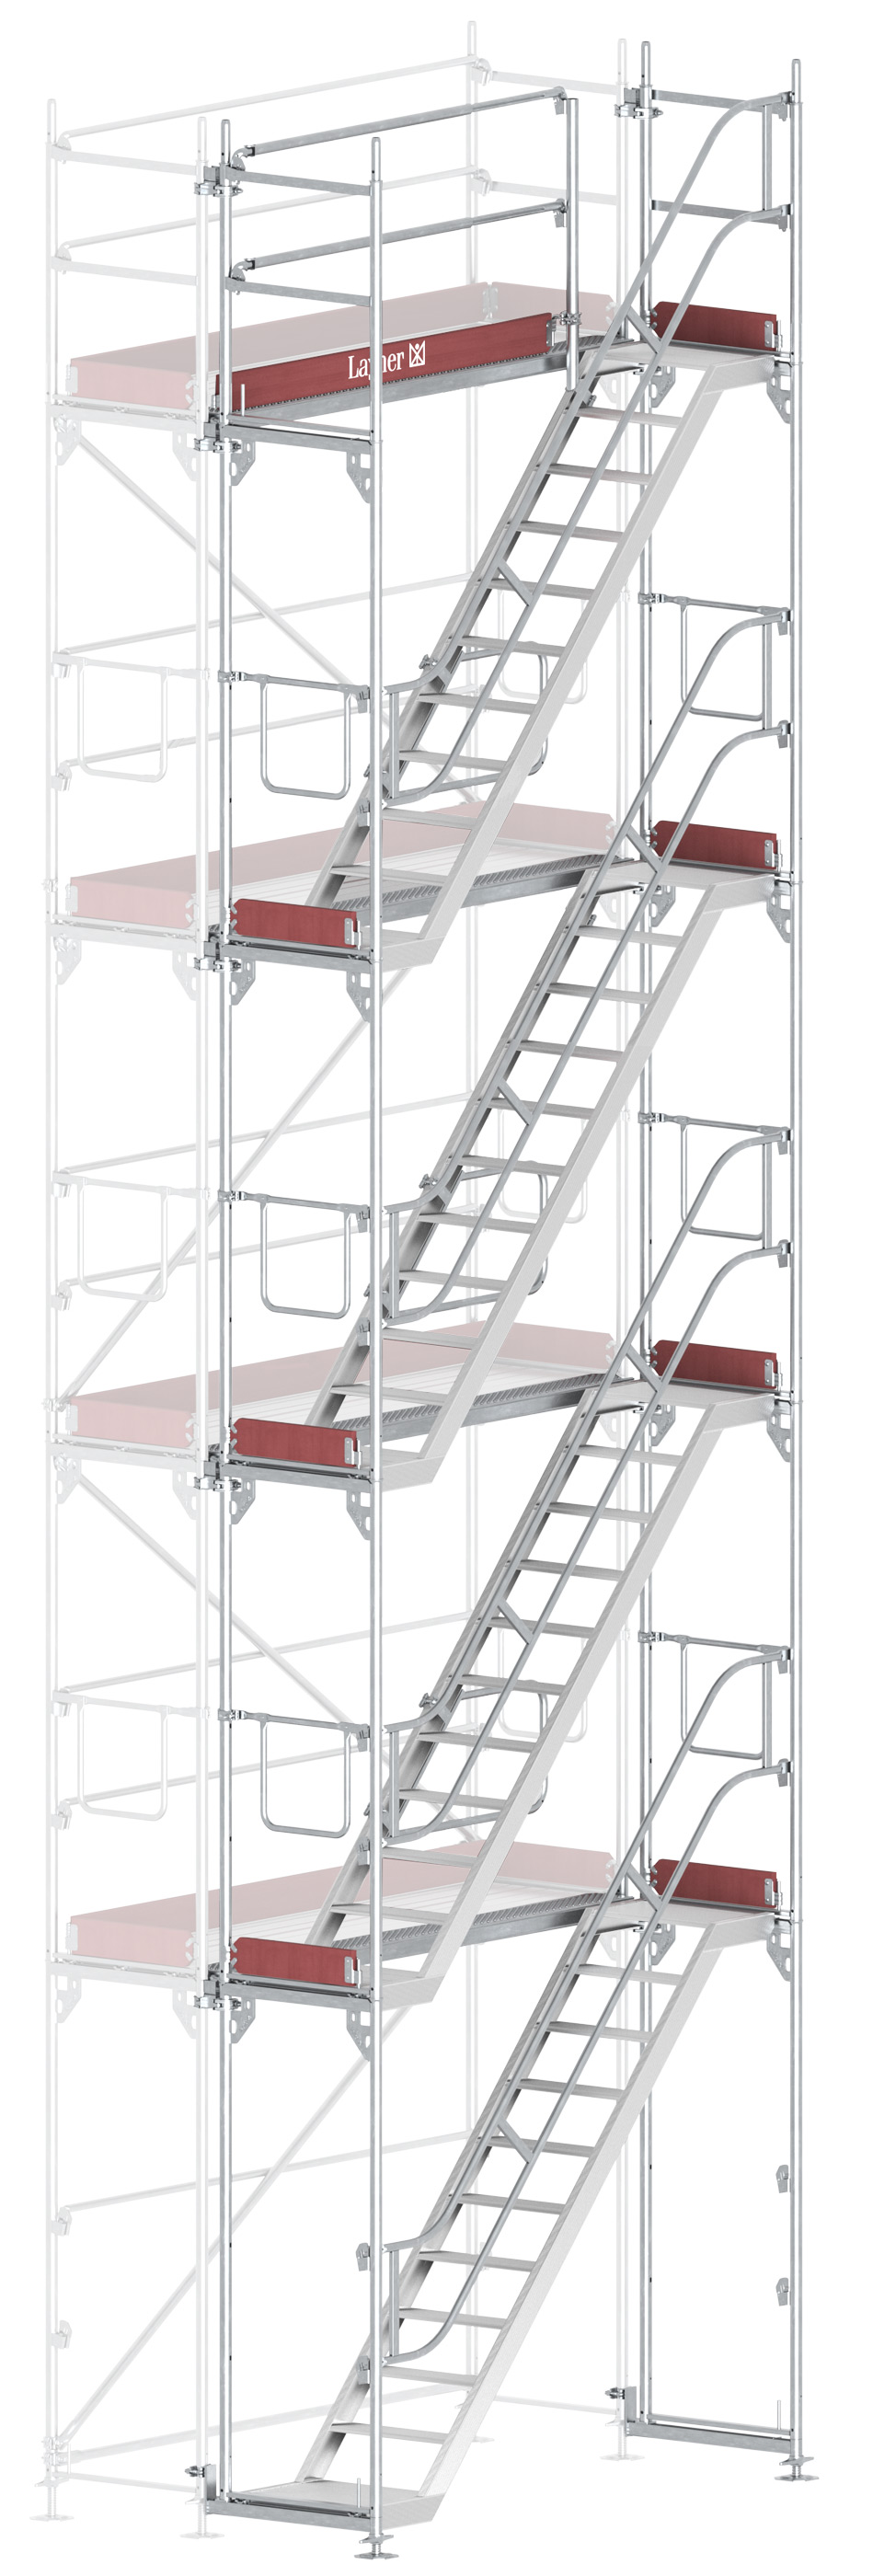 Layher Blitz Treppenturm-Vorbau Stahl - 2,57 x 8,20 m Erweiterung Treppenaufstieg nach TRBS 2121-2 für Layher Fassadengerüst (LG-1753-0800-VS) Bild-01